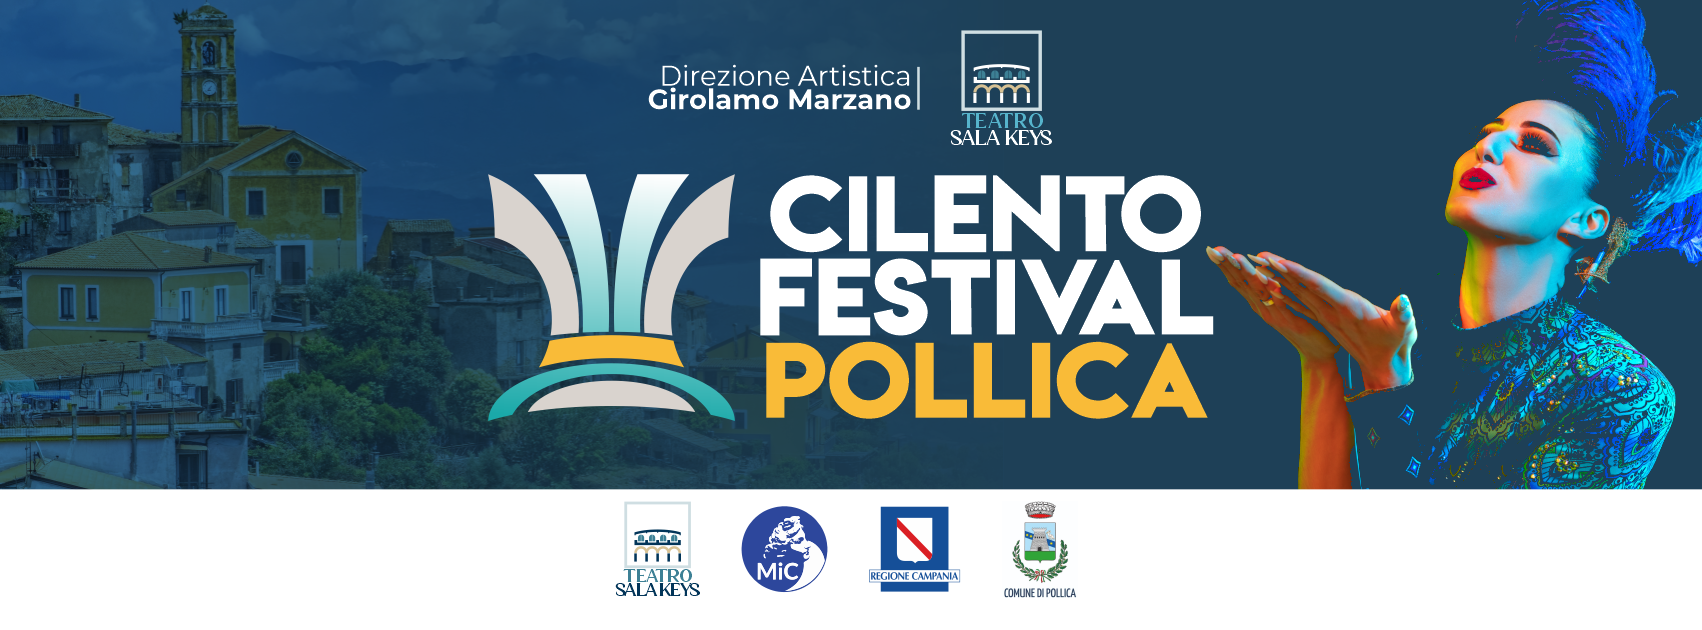 Pollica, presentata la terza edizione del ‘Cilento festival’: il programma completo